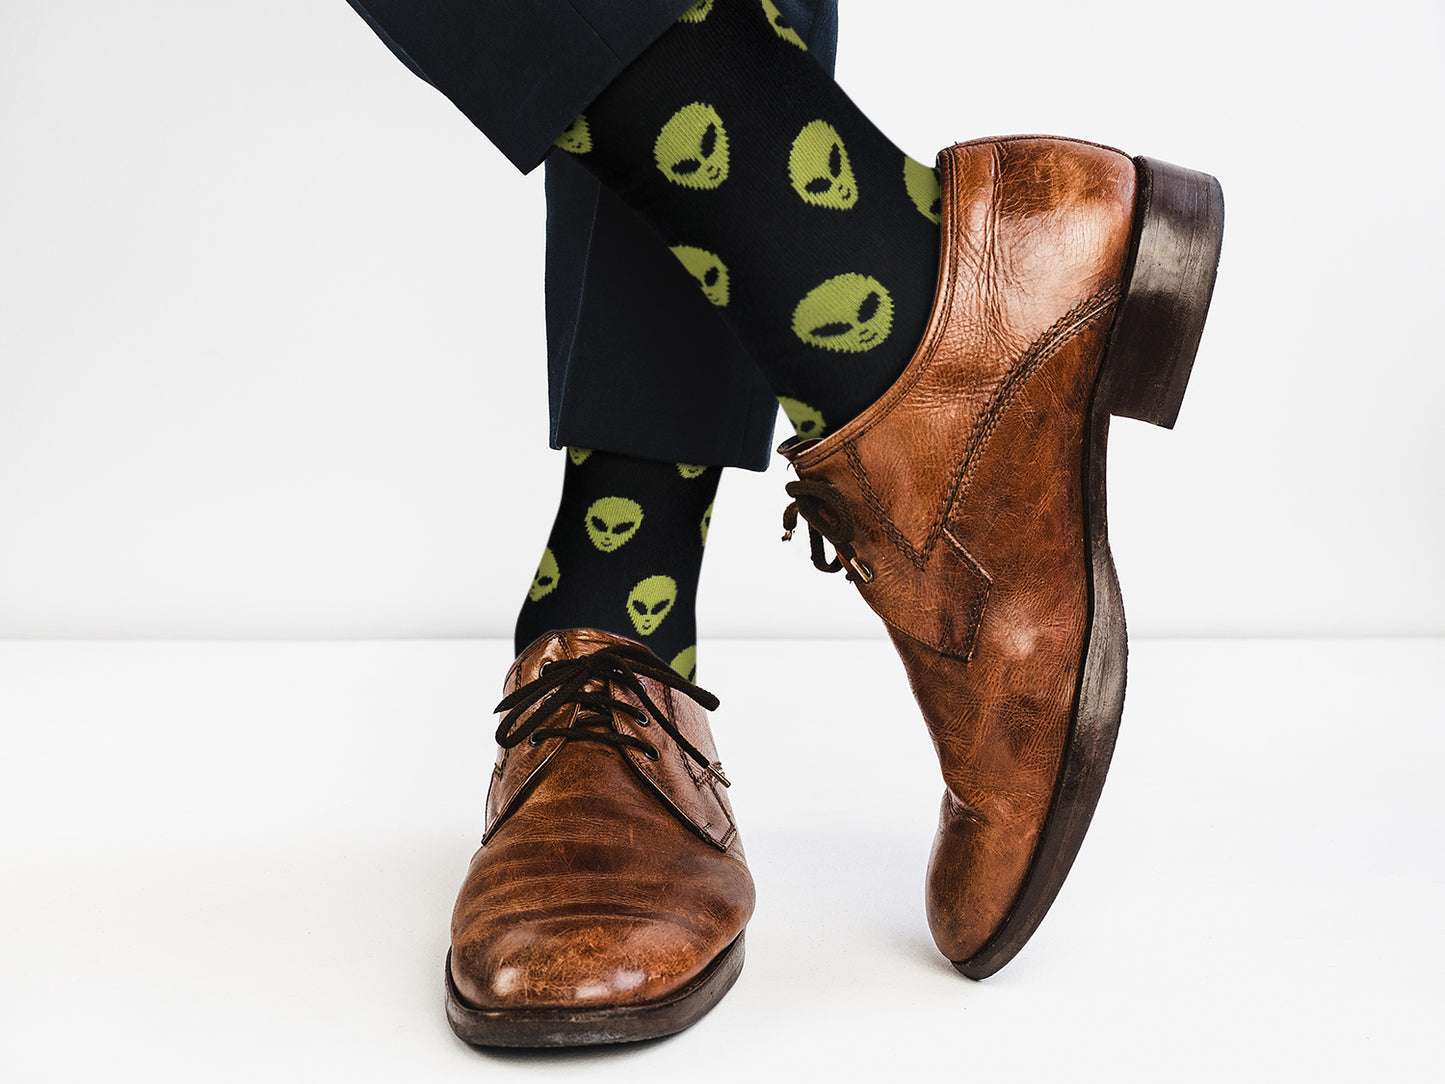 Casual Designer Animal Socks - Alien - for Men and Women